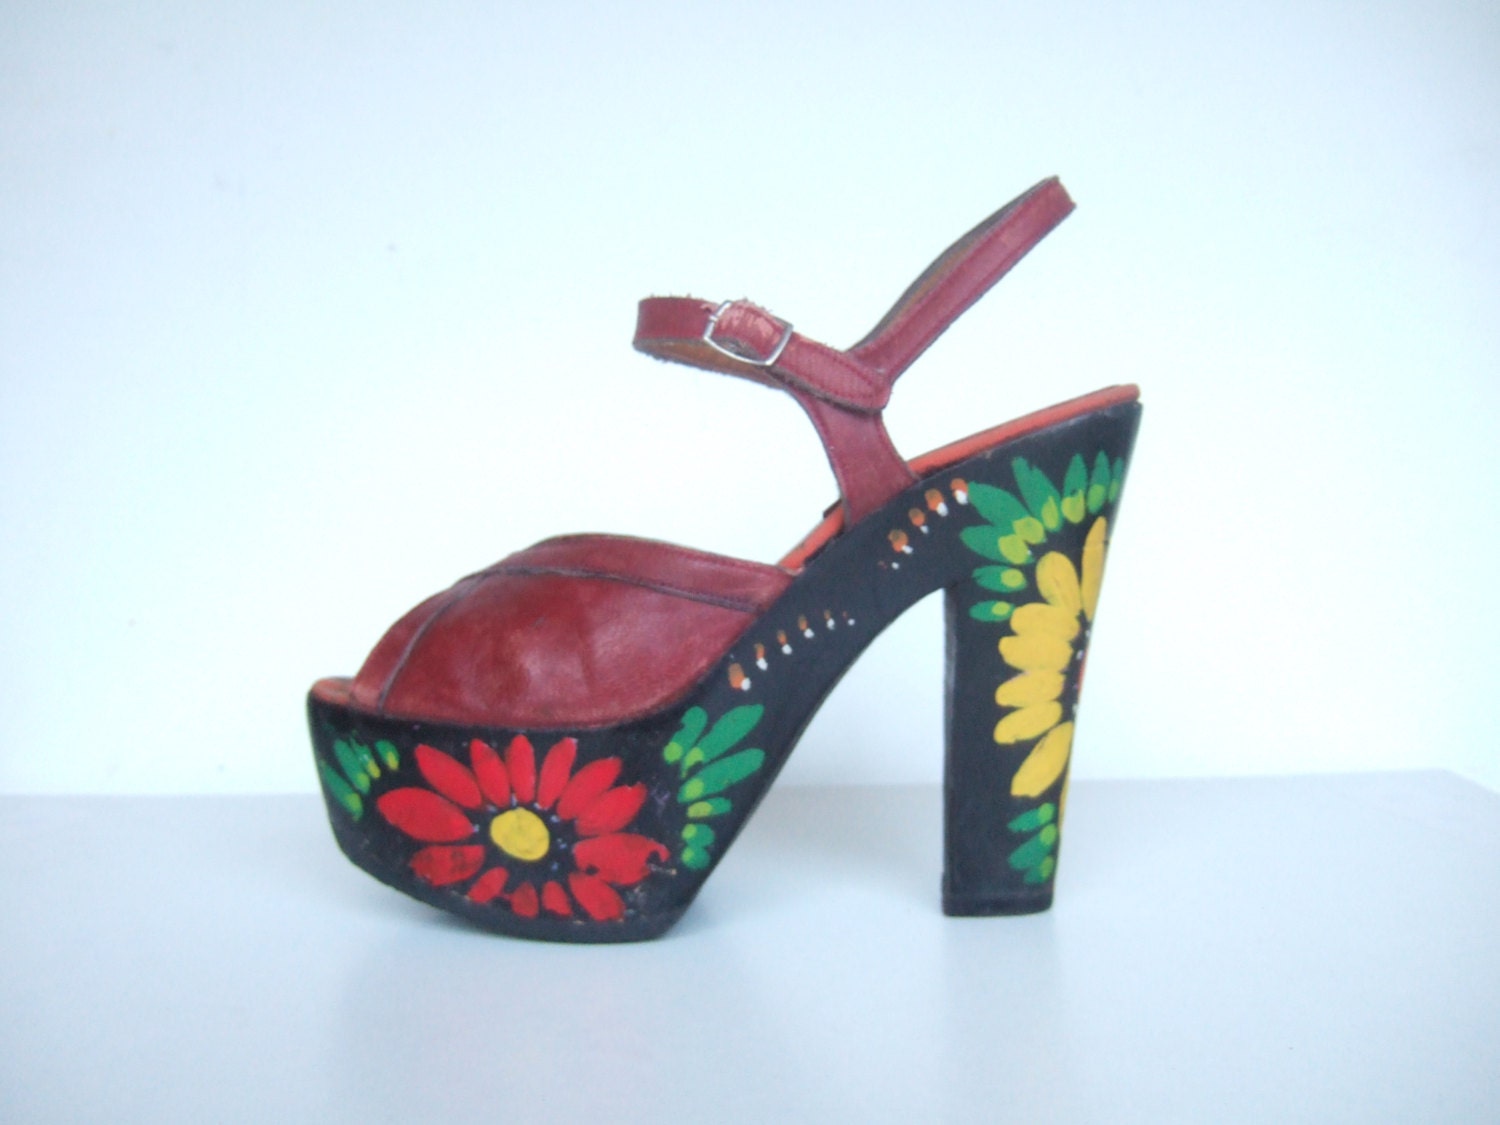 Vintage 1970s shoes / 70s floral wooden platforms / leather sandals / UK 2 EU 34 US 4 - StellaRoseVintage